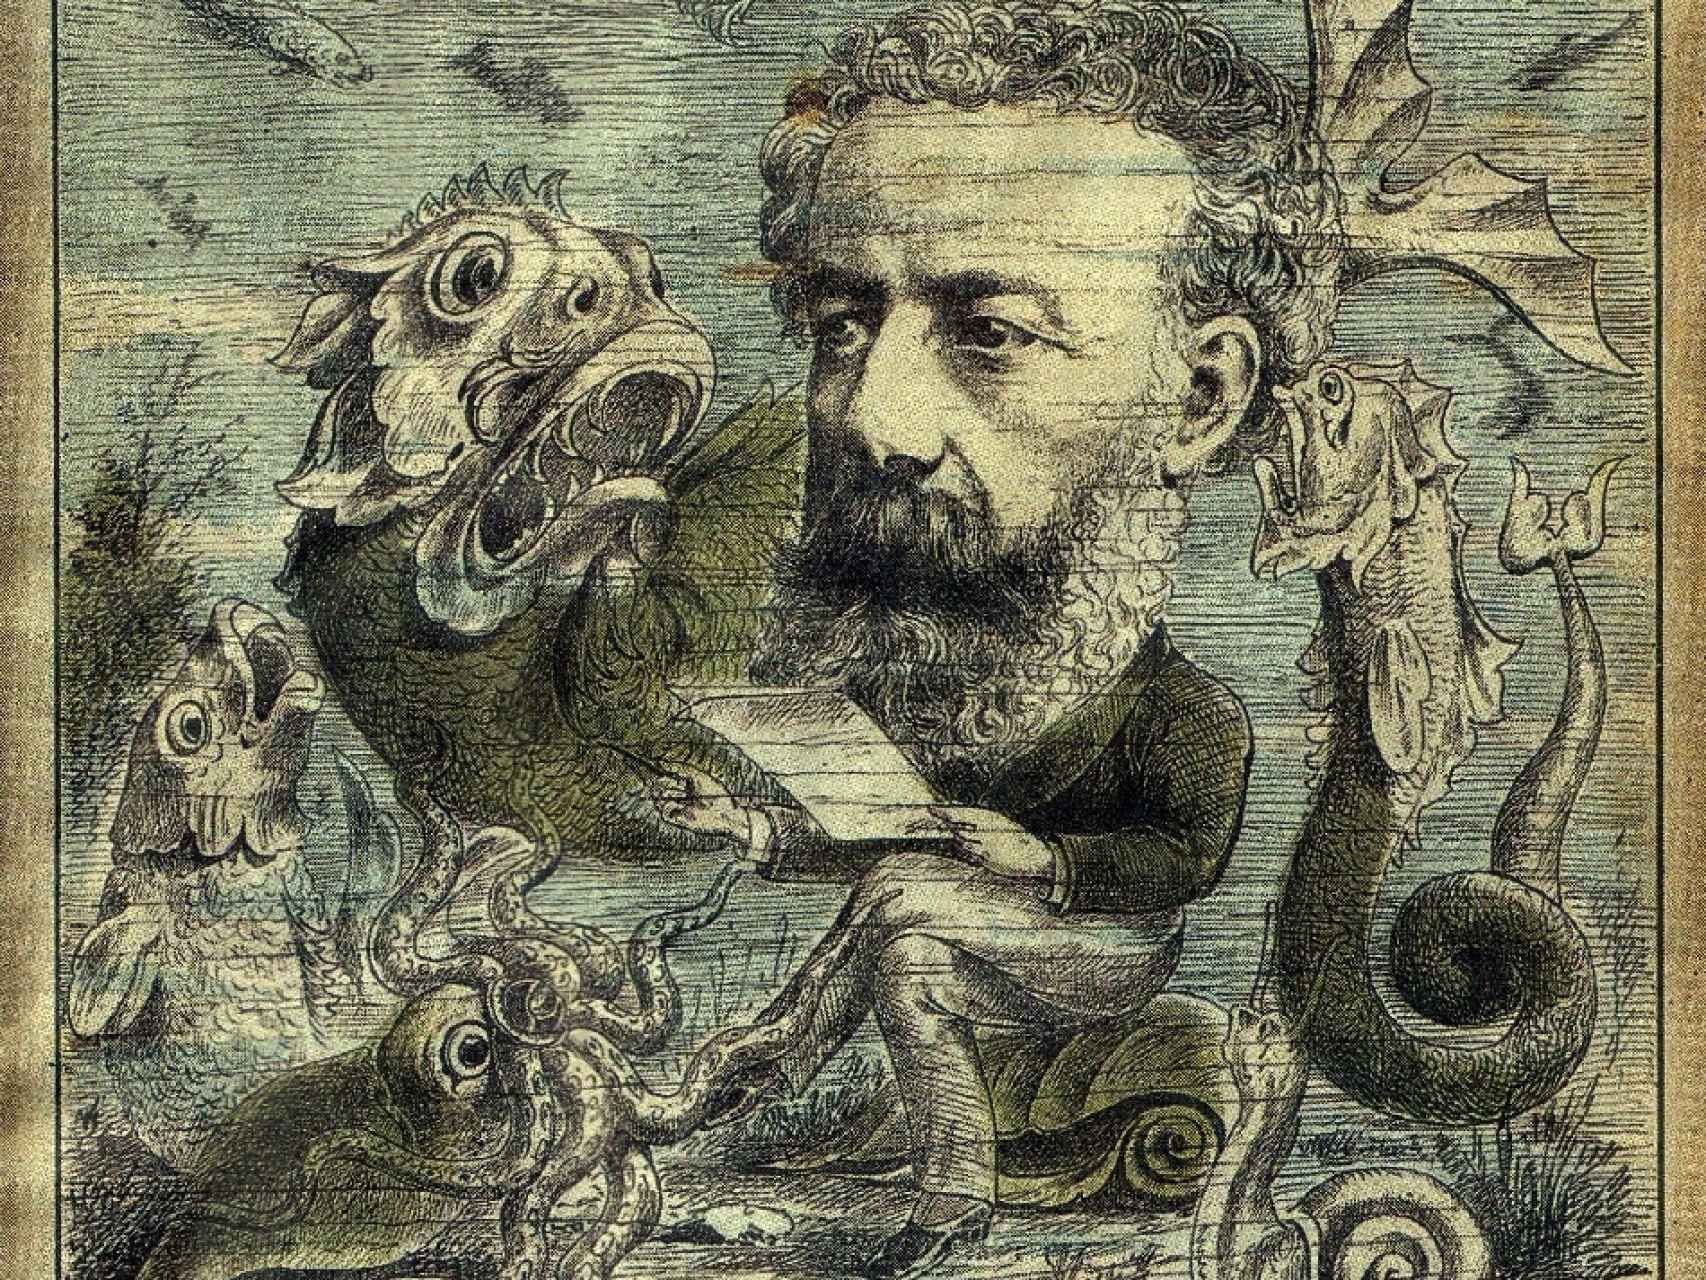 Ilustración de Jules Verne con sus criaturas publicada en L' Algerie.